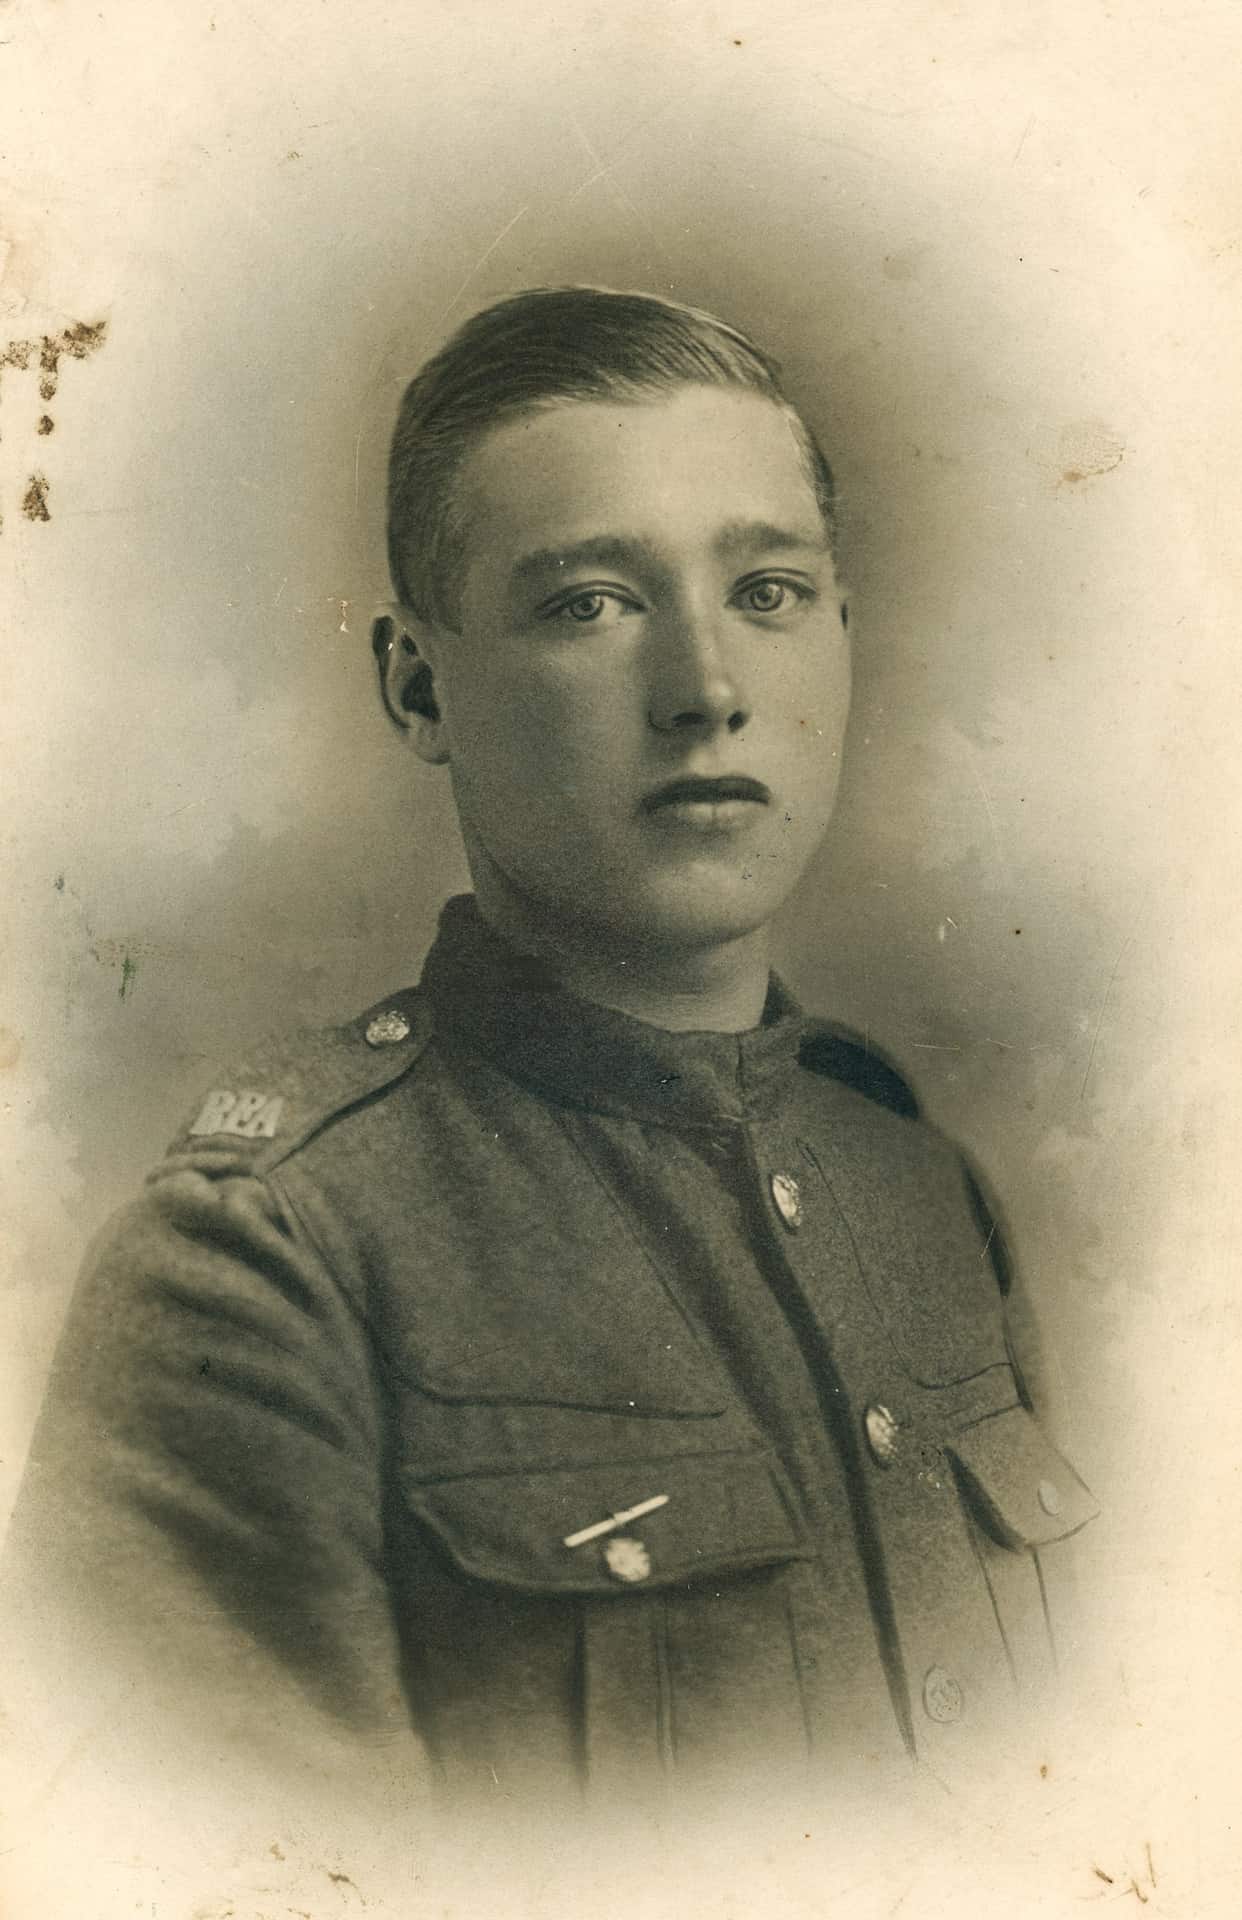 Granddad Walter in uniform taken circa 1912